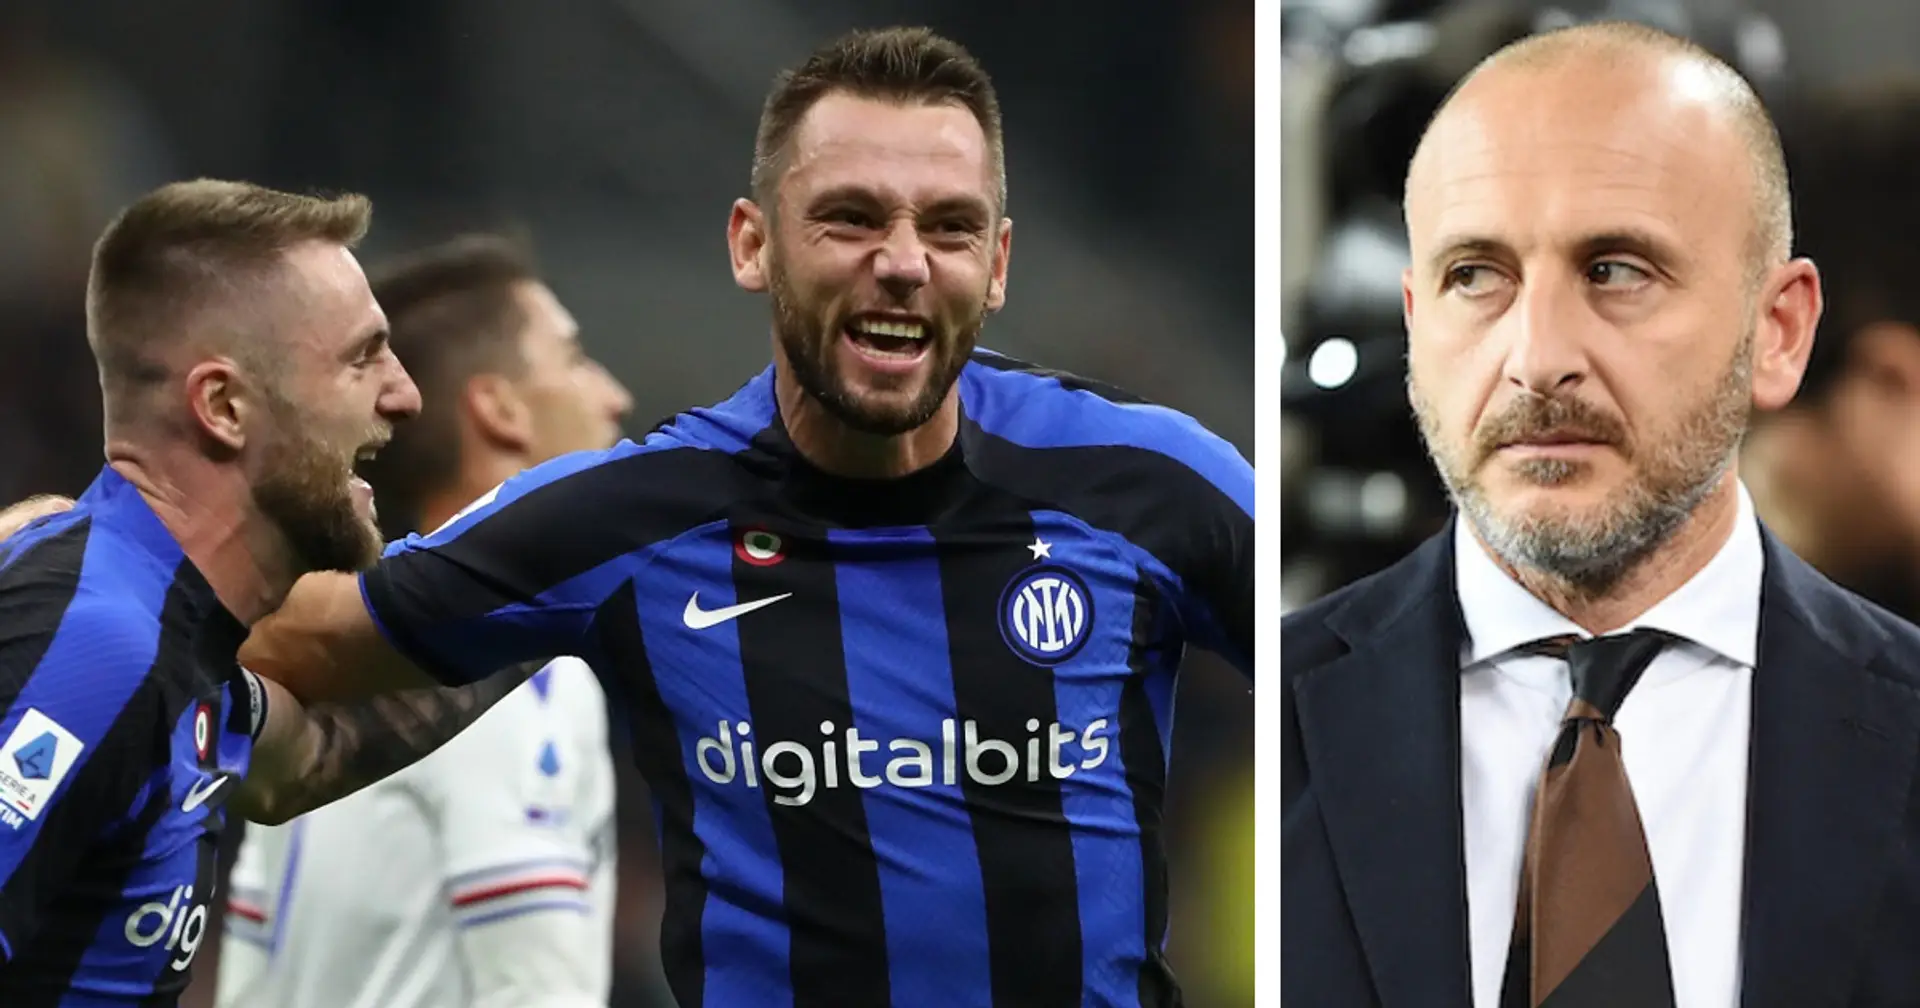 Sfuma un possibile rinforzo difensivo per l'Inter: un Top club europeo si oppone all'addio a gennaio